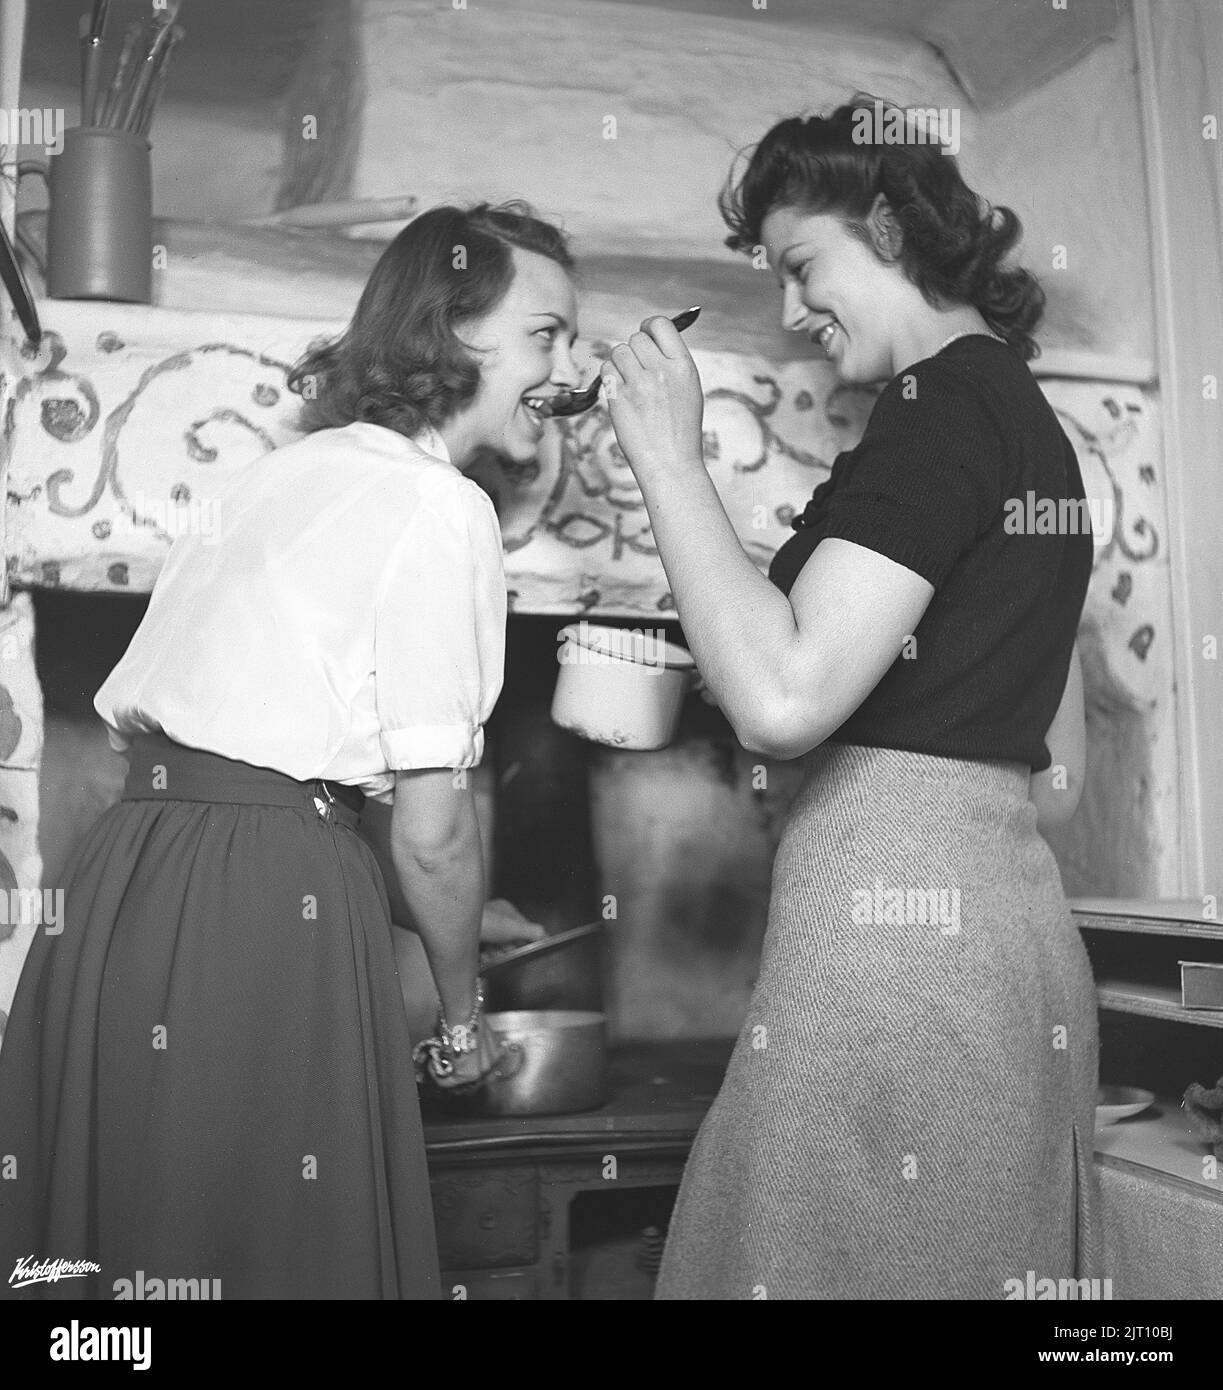 In der Küche 1940s. Interieur einer ländlichen Küche und zwei Frauen kochen zusammen, eine Verkostung aus dem Inhalt eines Eintopfes auf einem Löffel. Schweden 1945 Kristoffersson Ref. N143-5 Stockfoto